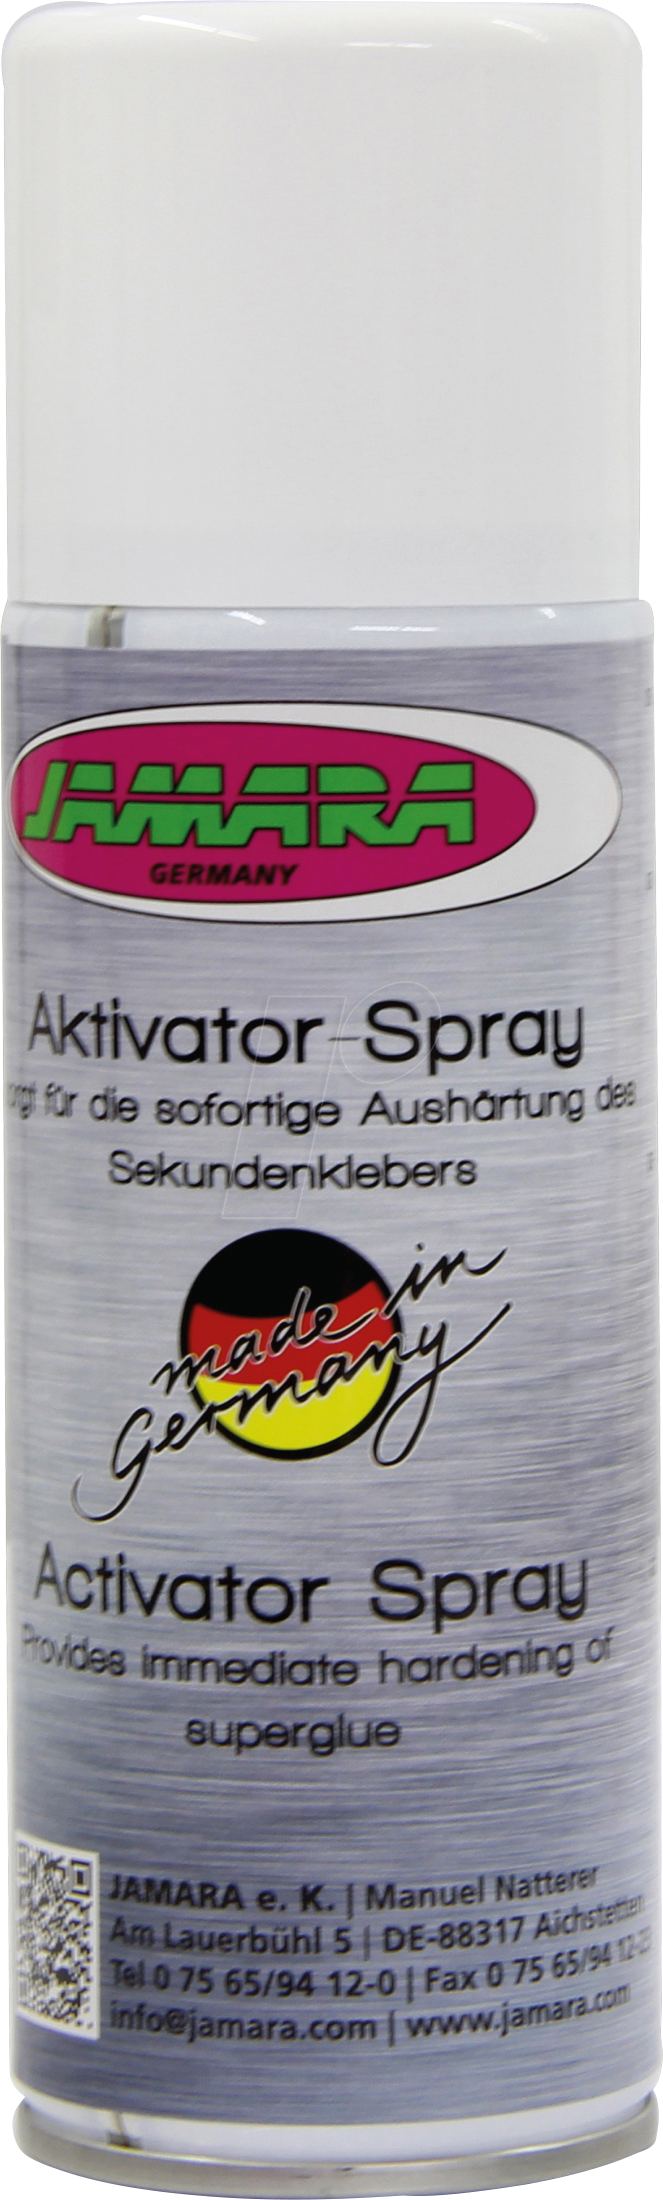 JAMARA 236085 - Aktivator Spray, für Sekundenkleber, 200 ml von Jamara